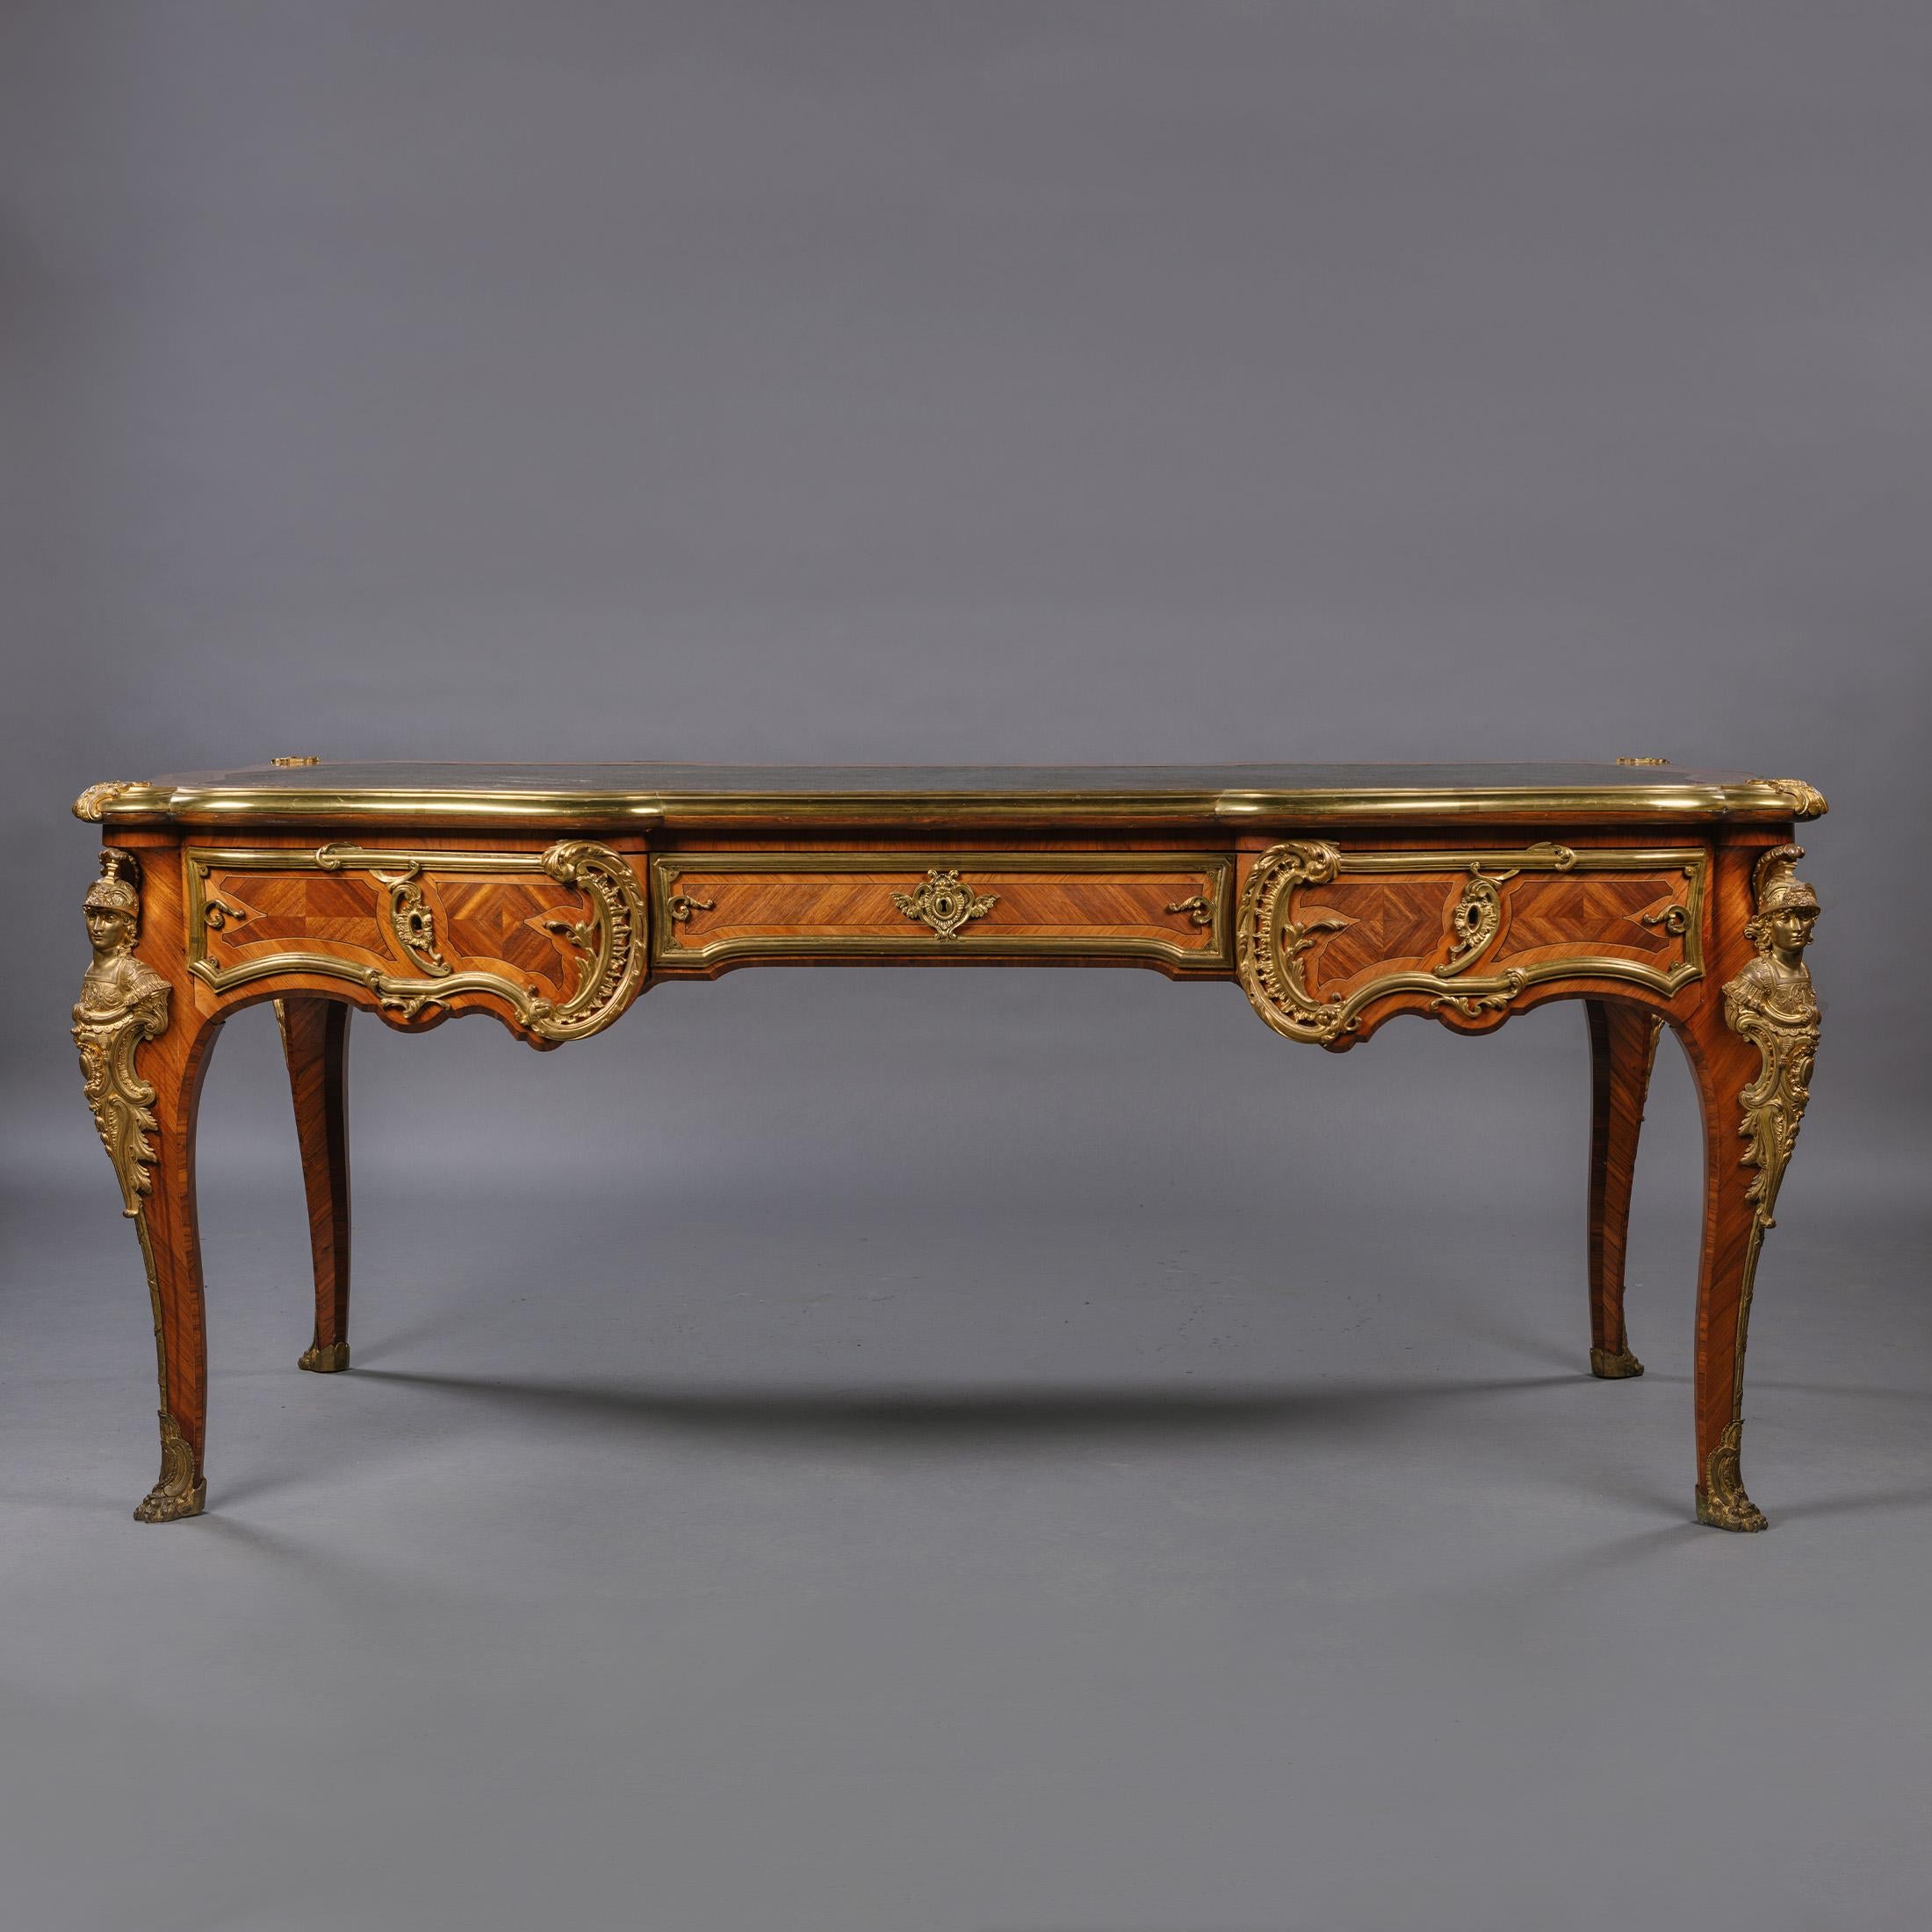 Un bureau plat de style Louis XV monté en bronze doré par François Linke.

Le plateau rectangulaire est orné d'une surface d'écriture en cuir vert avec une bordure dorée, dans un cadre en bronze doré au-dessus de trois tiroirs en frise, le dos